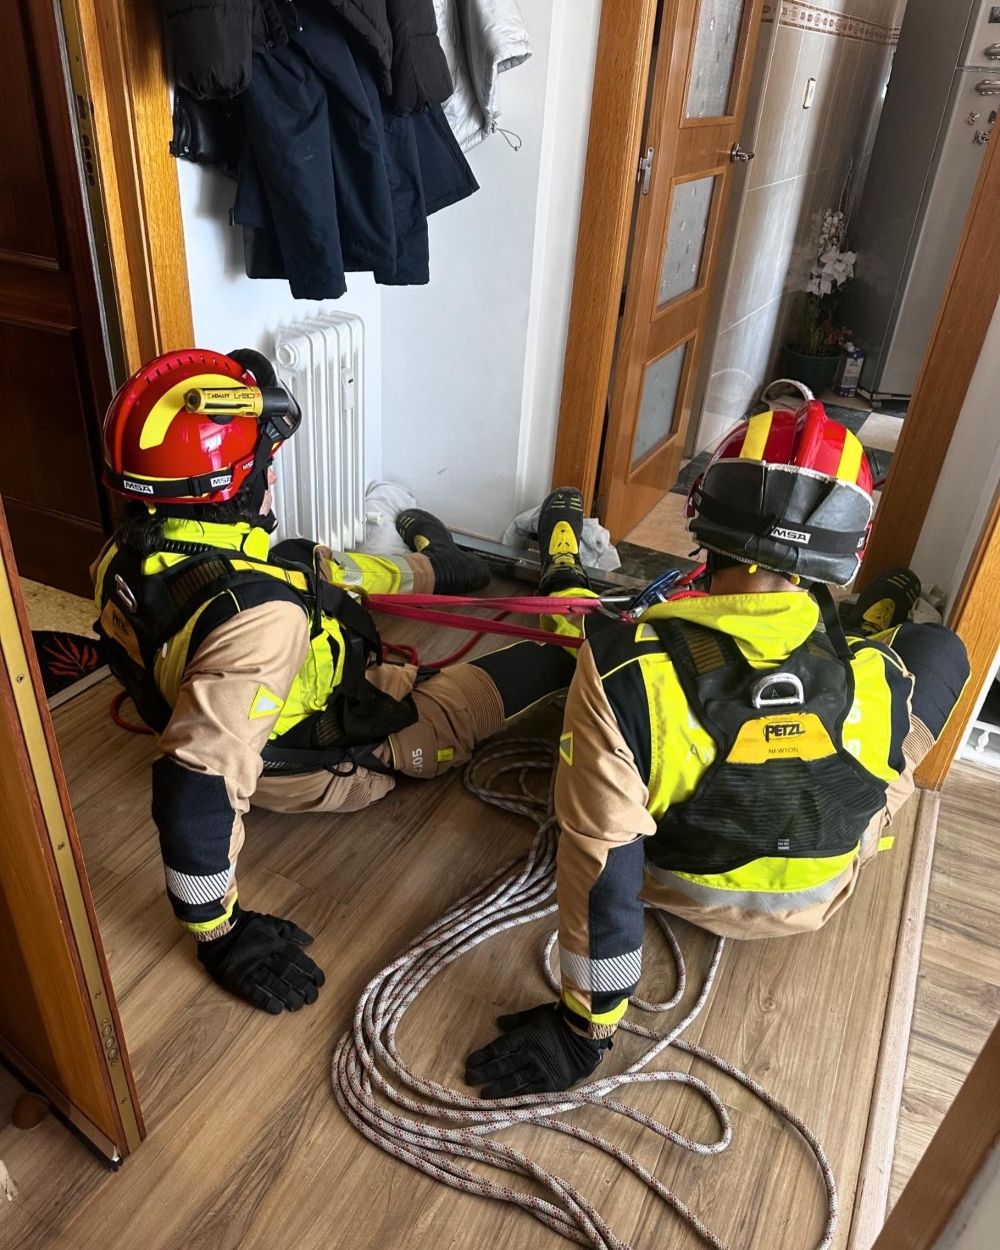 Los bomberos de León acceden a una vivienda en una complicada operación tras un incidente sanitario